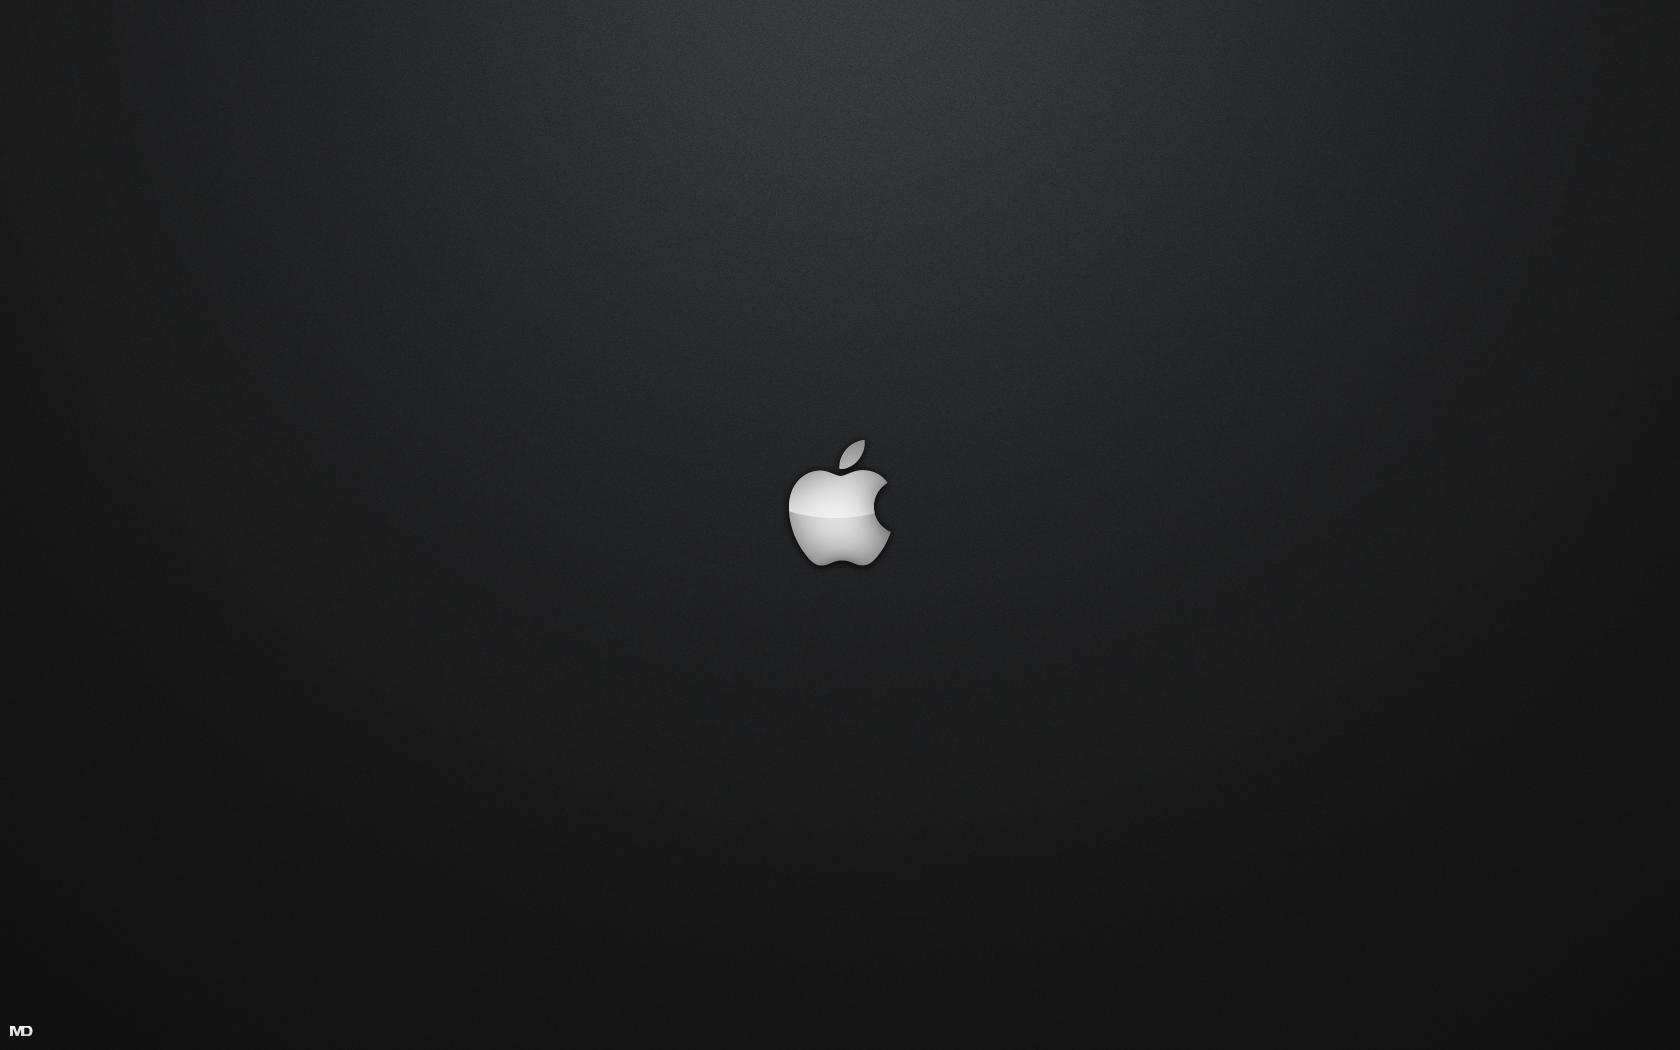 Black Cool Apple Mac Wallpaper Best #1816 Wallpaper | High ...